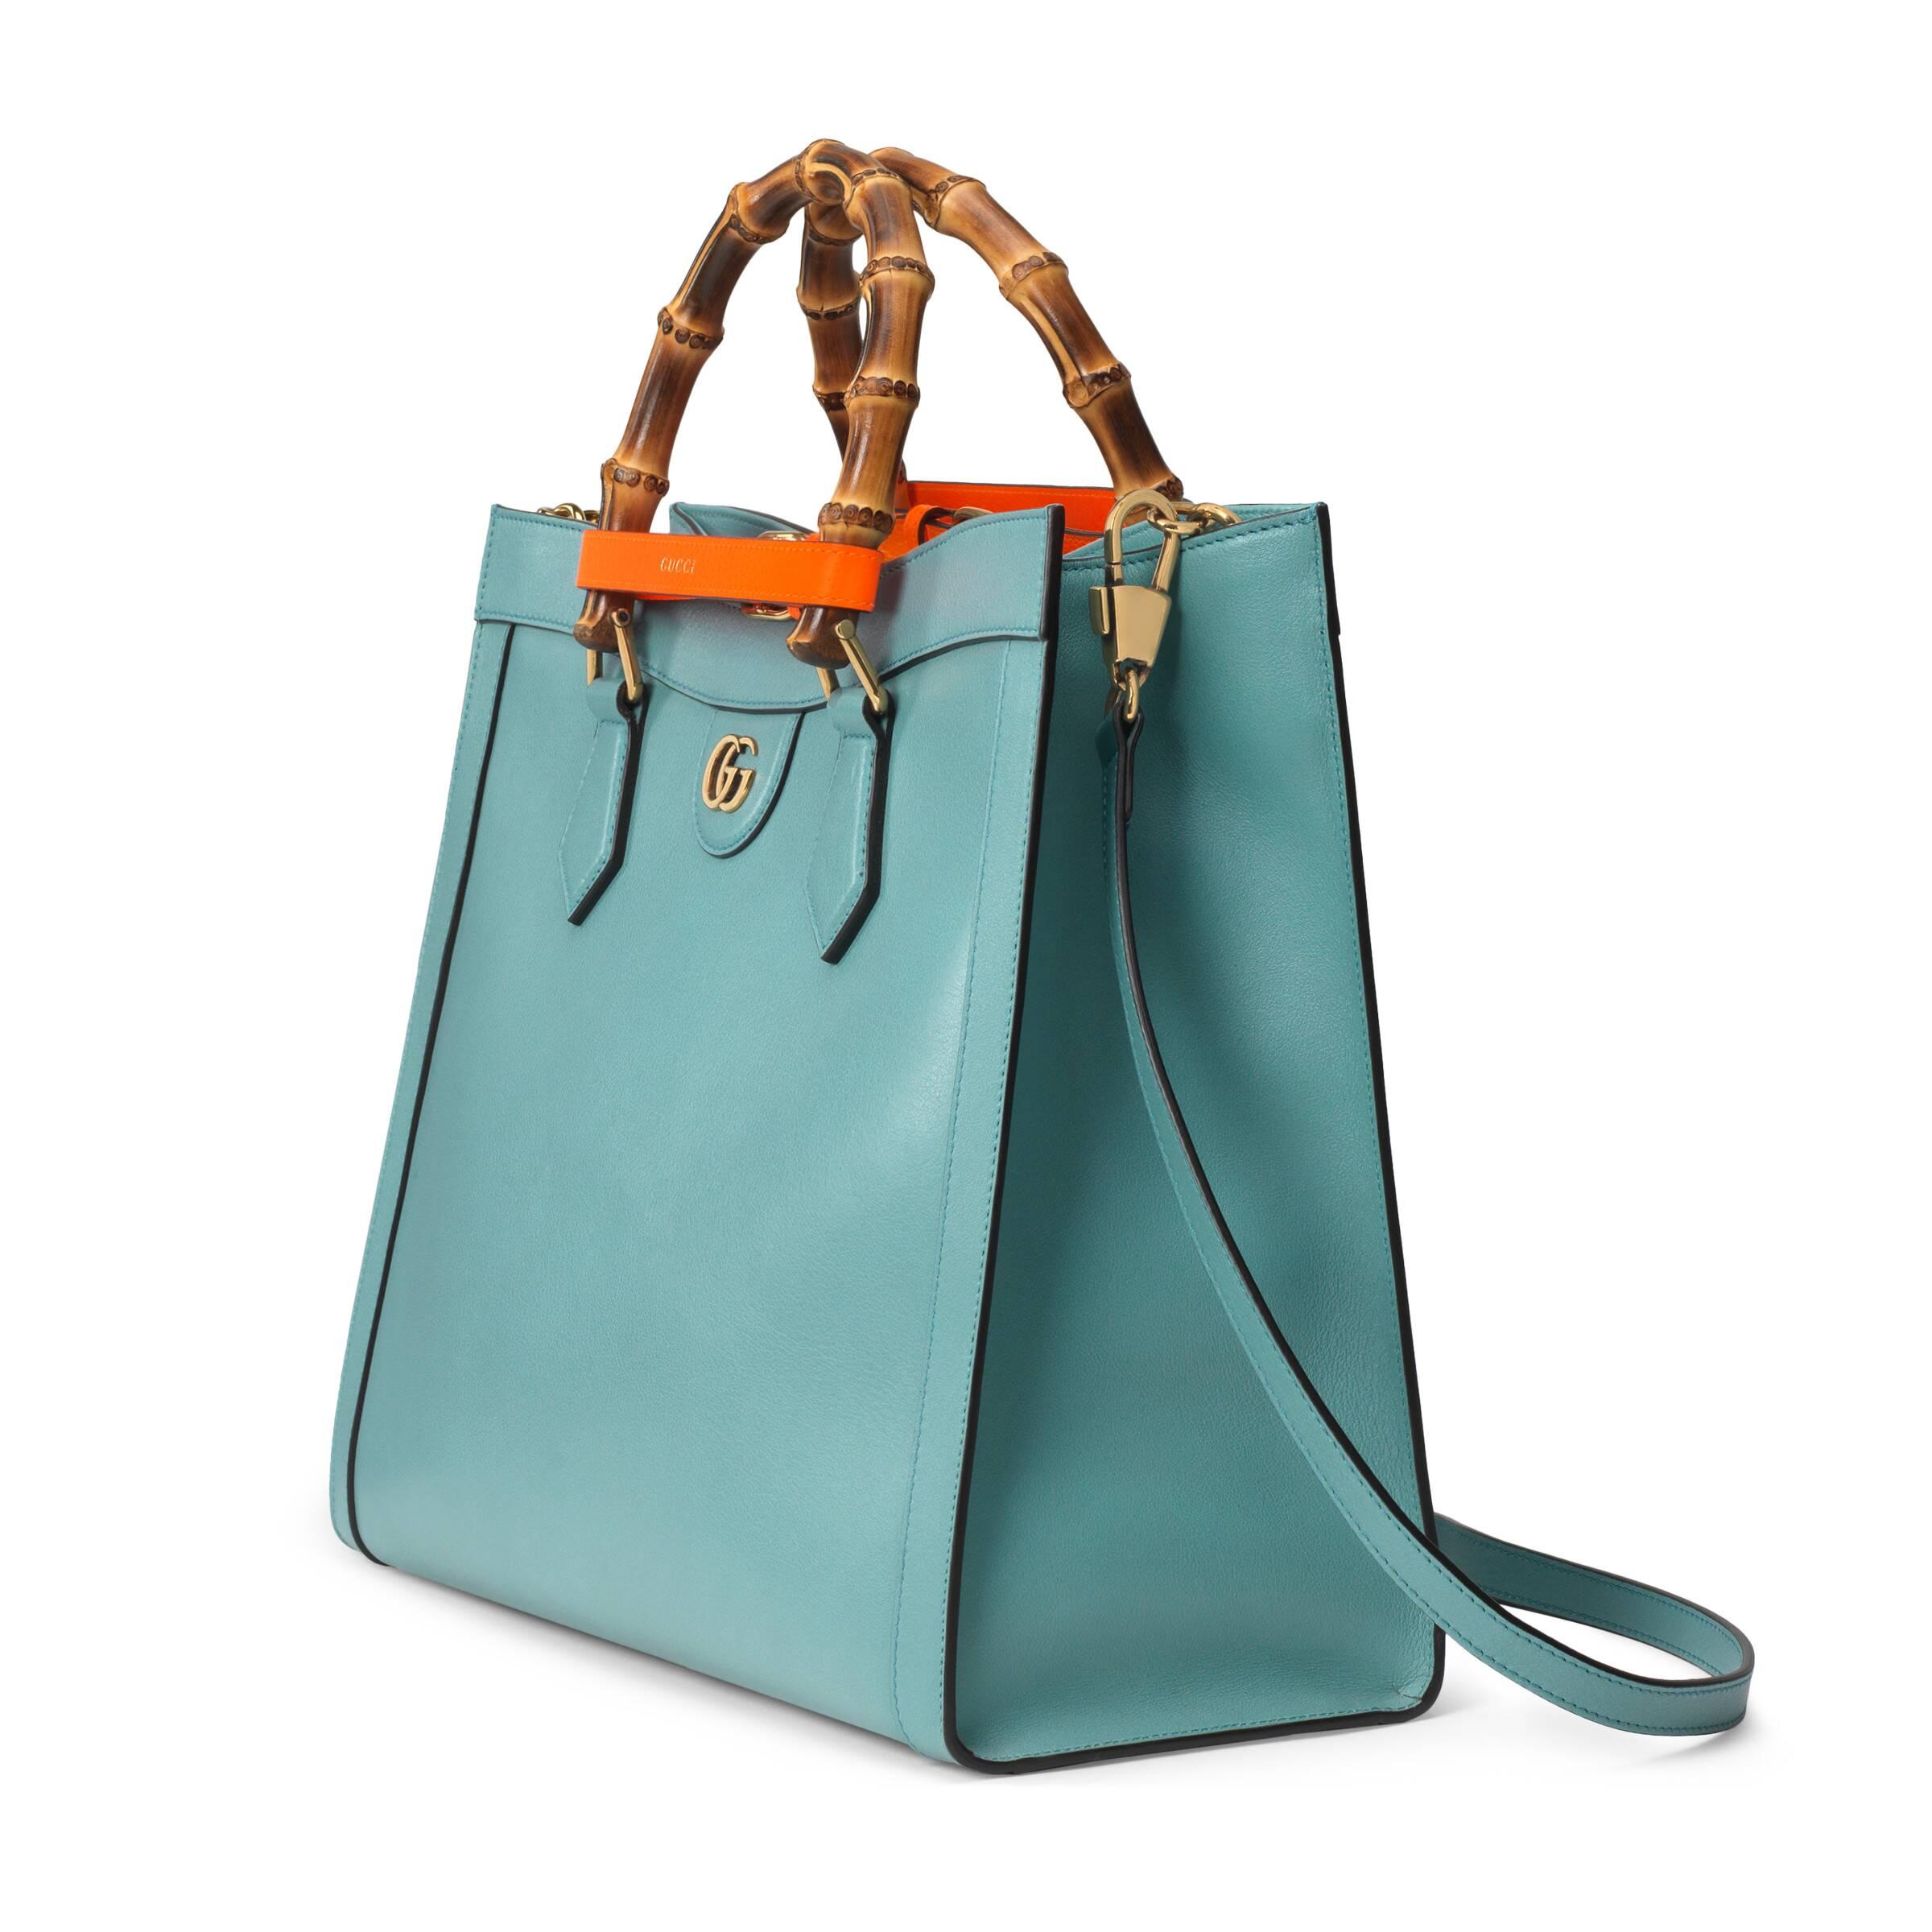 Gucci Diana Medium Tote Bag in Blue